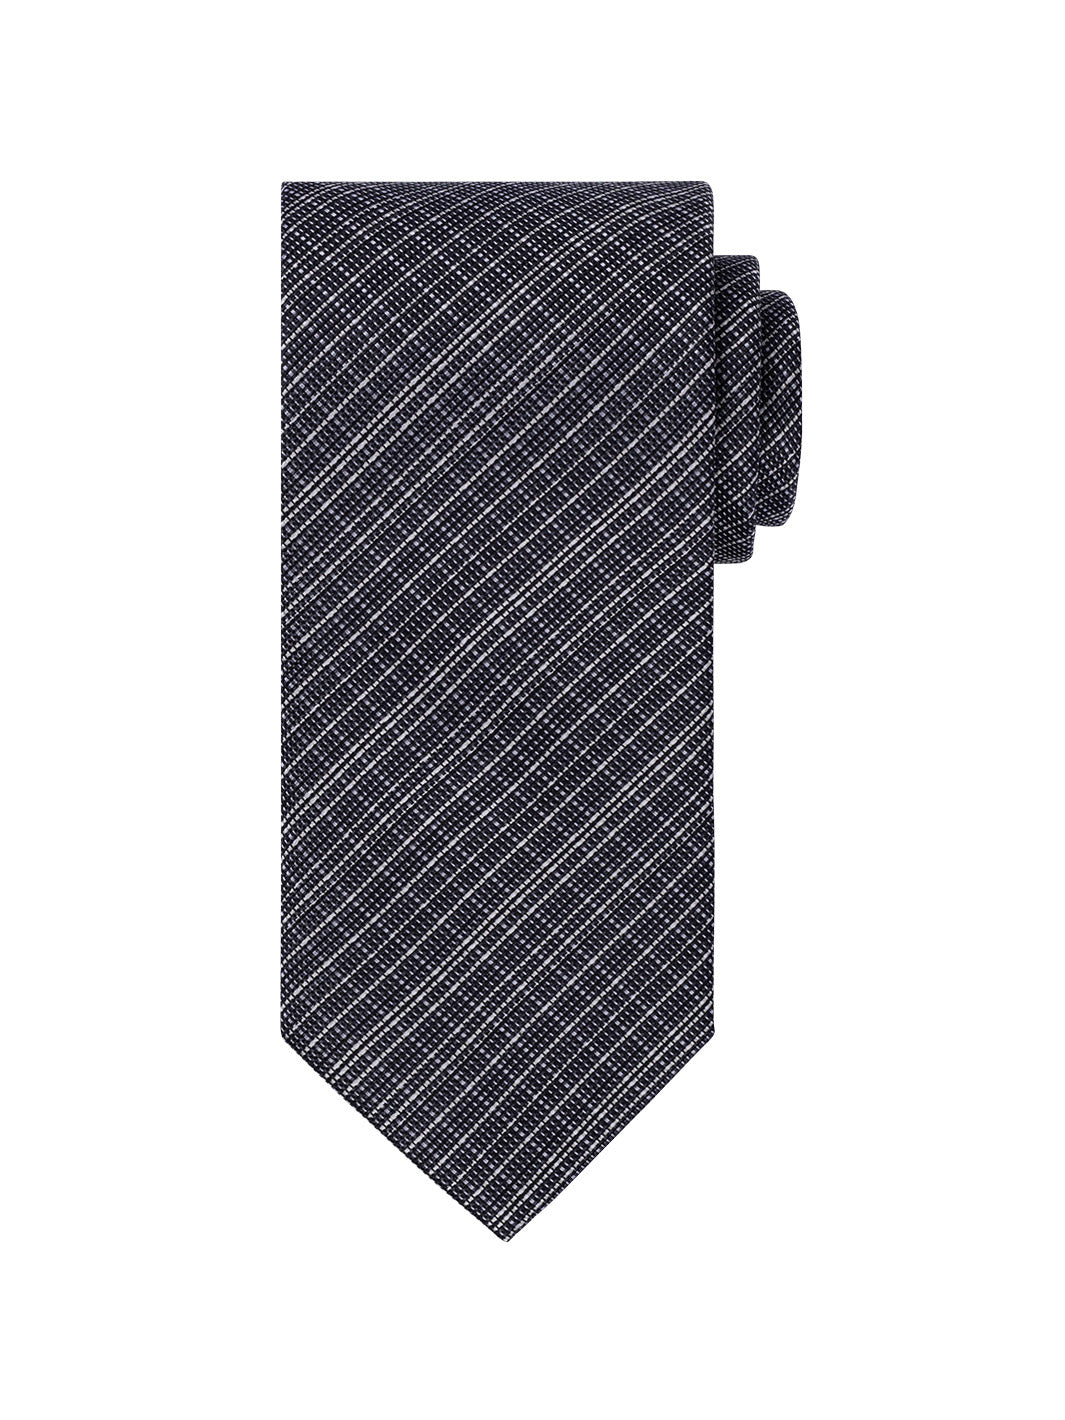 Men's Titanium Tie - Black and White